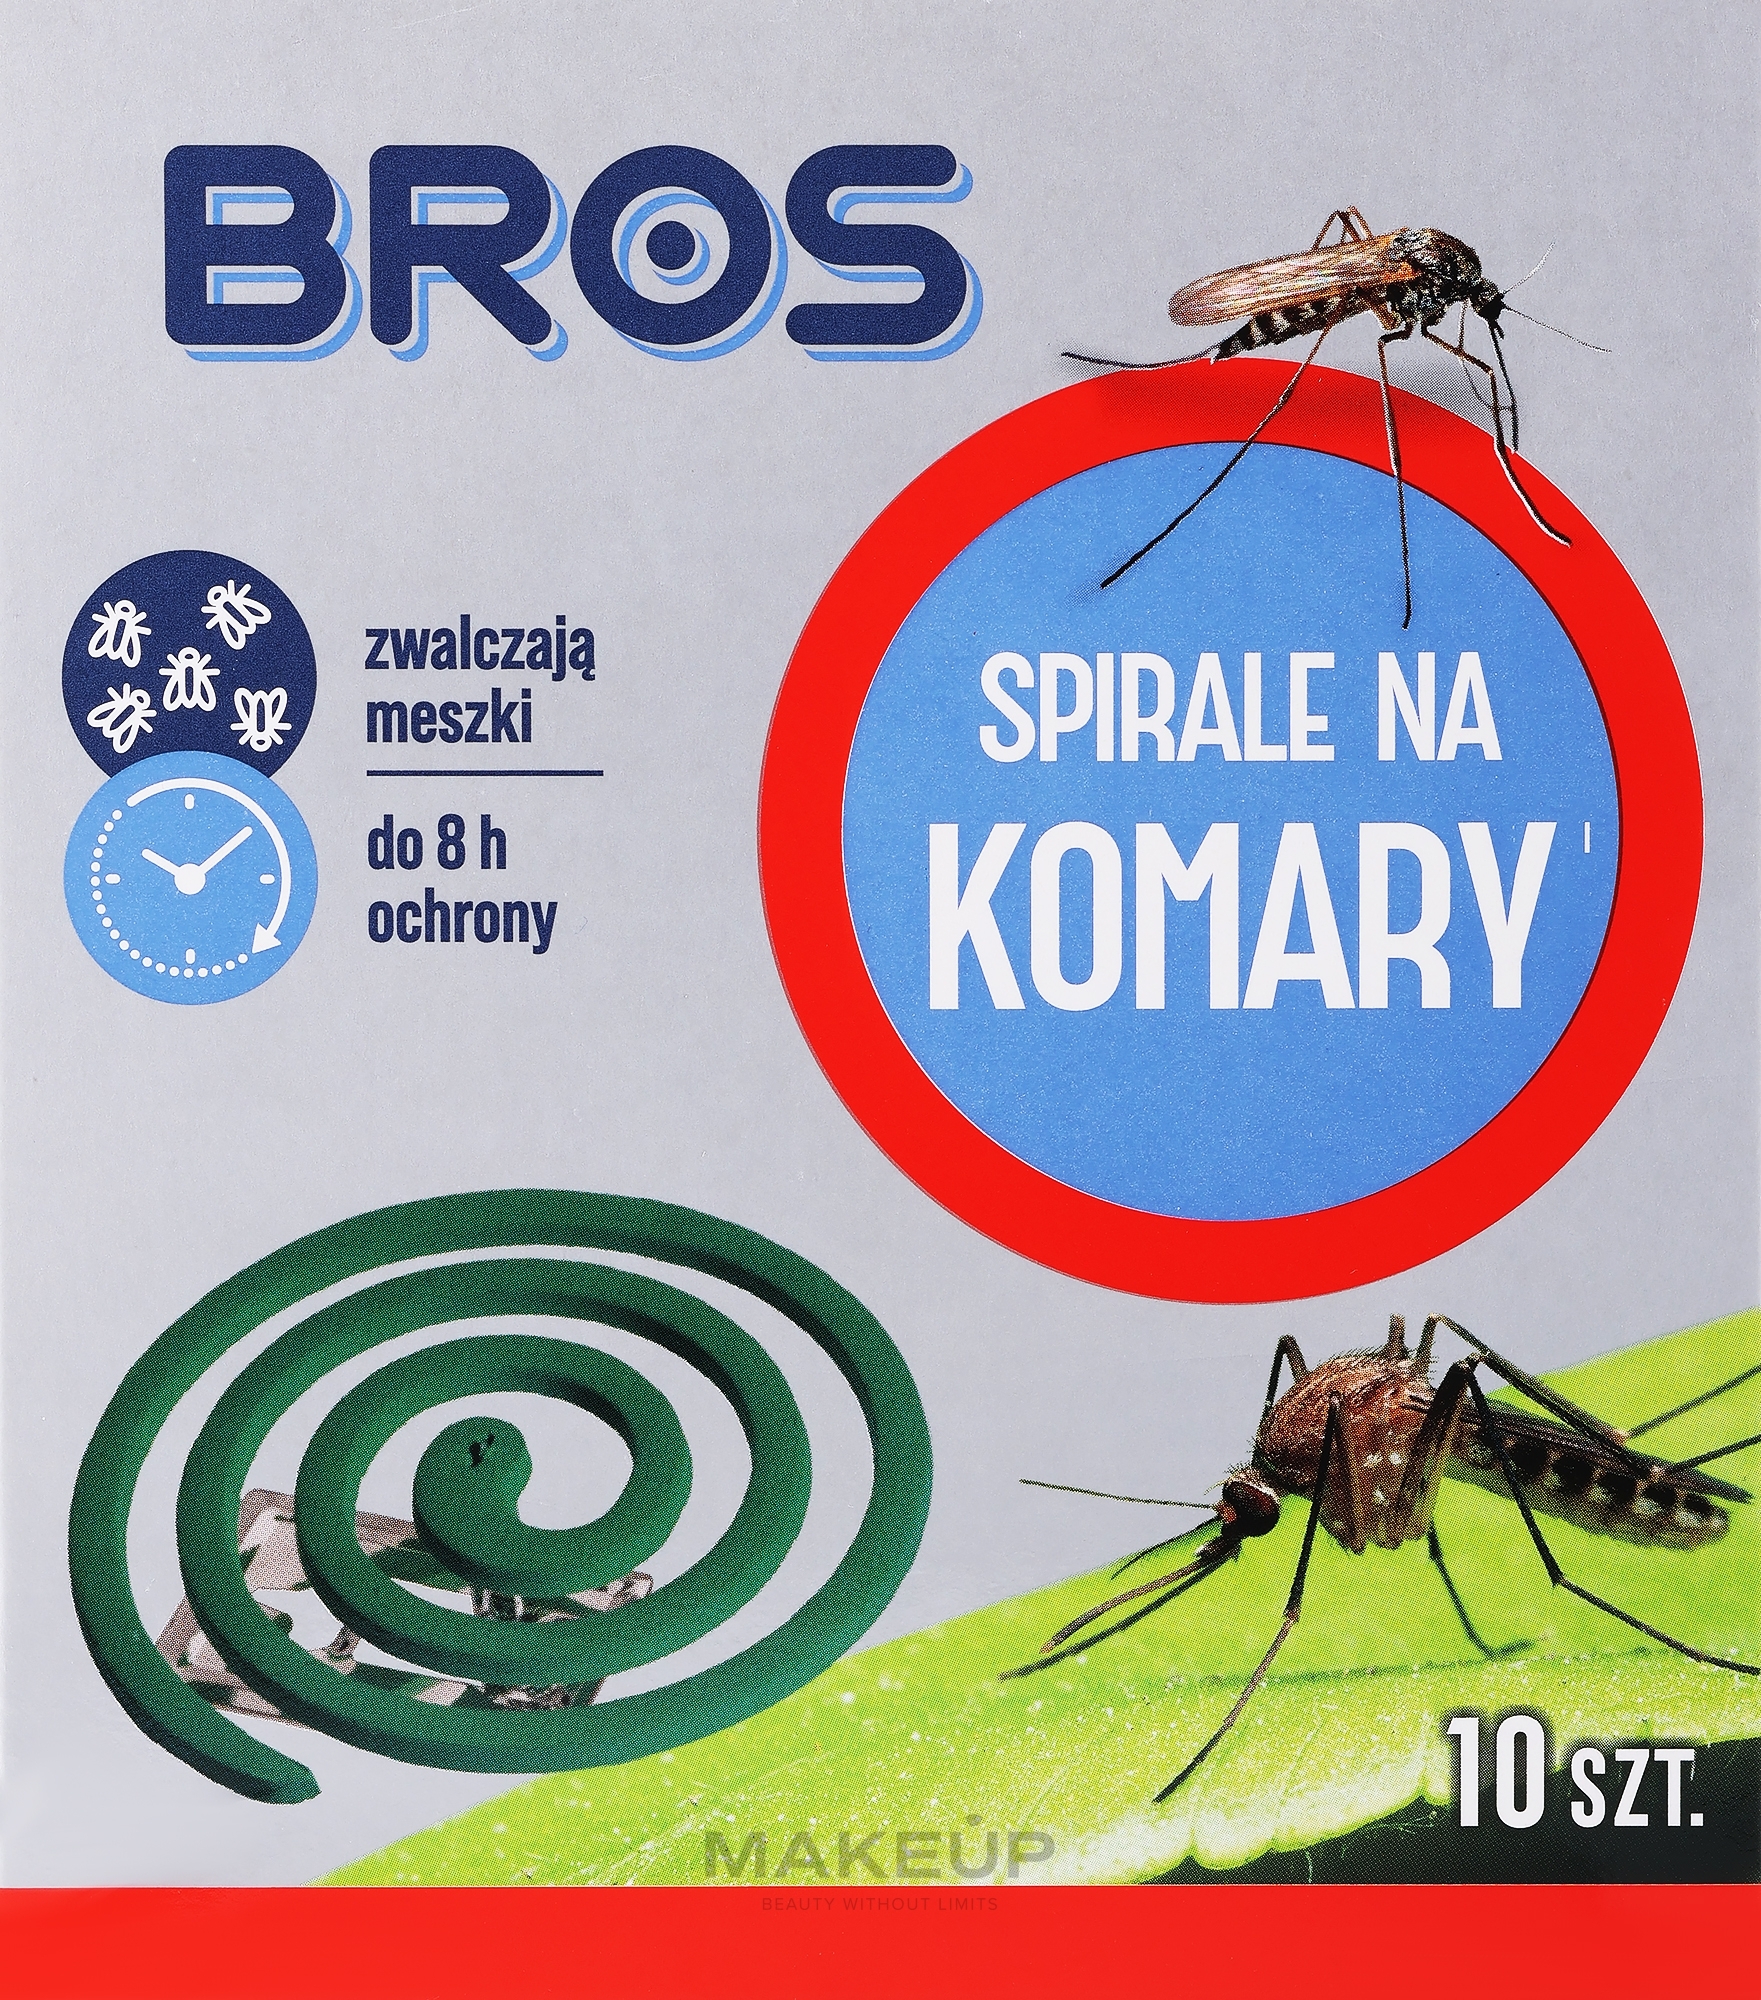 Інсектицидна спіраль від комарів - Bros — фото 10шт